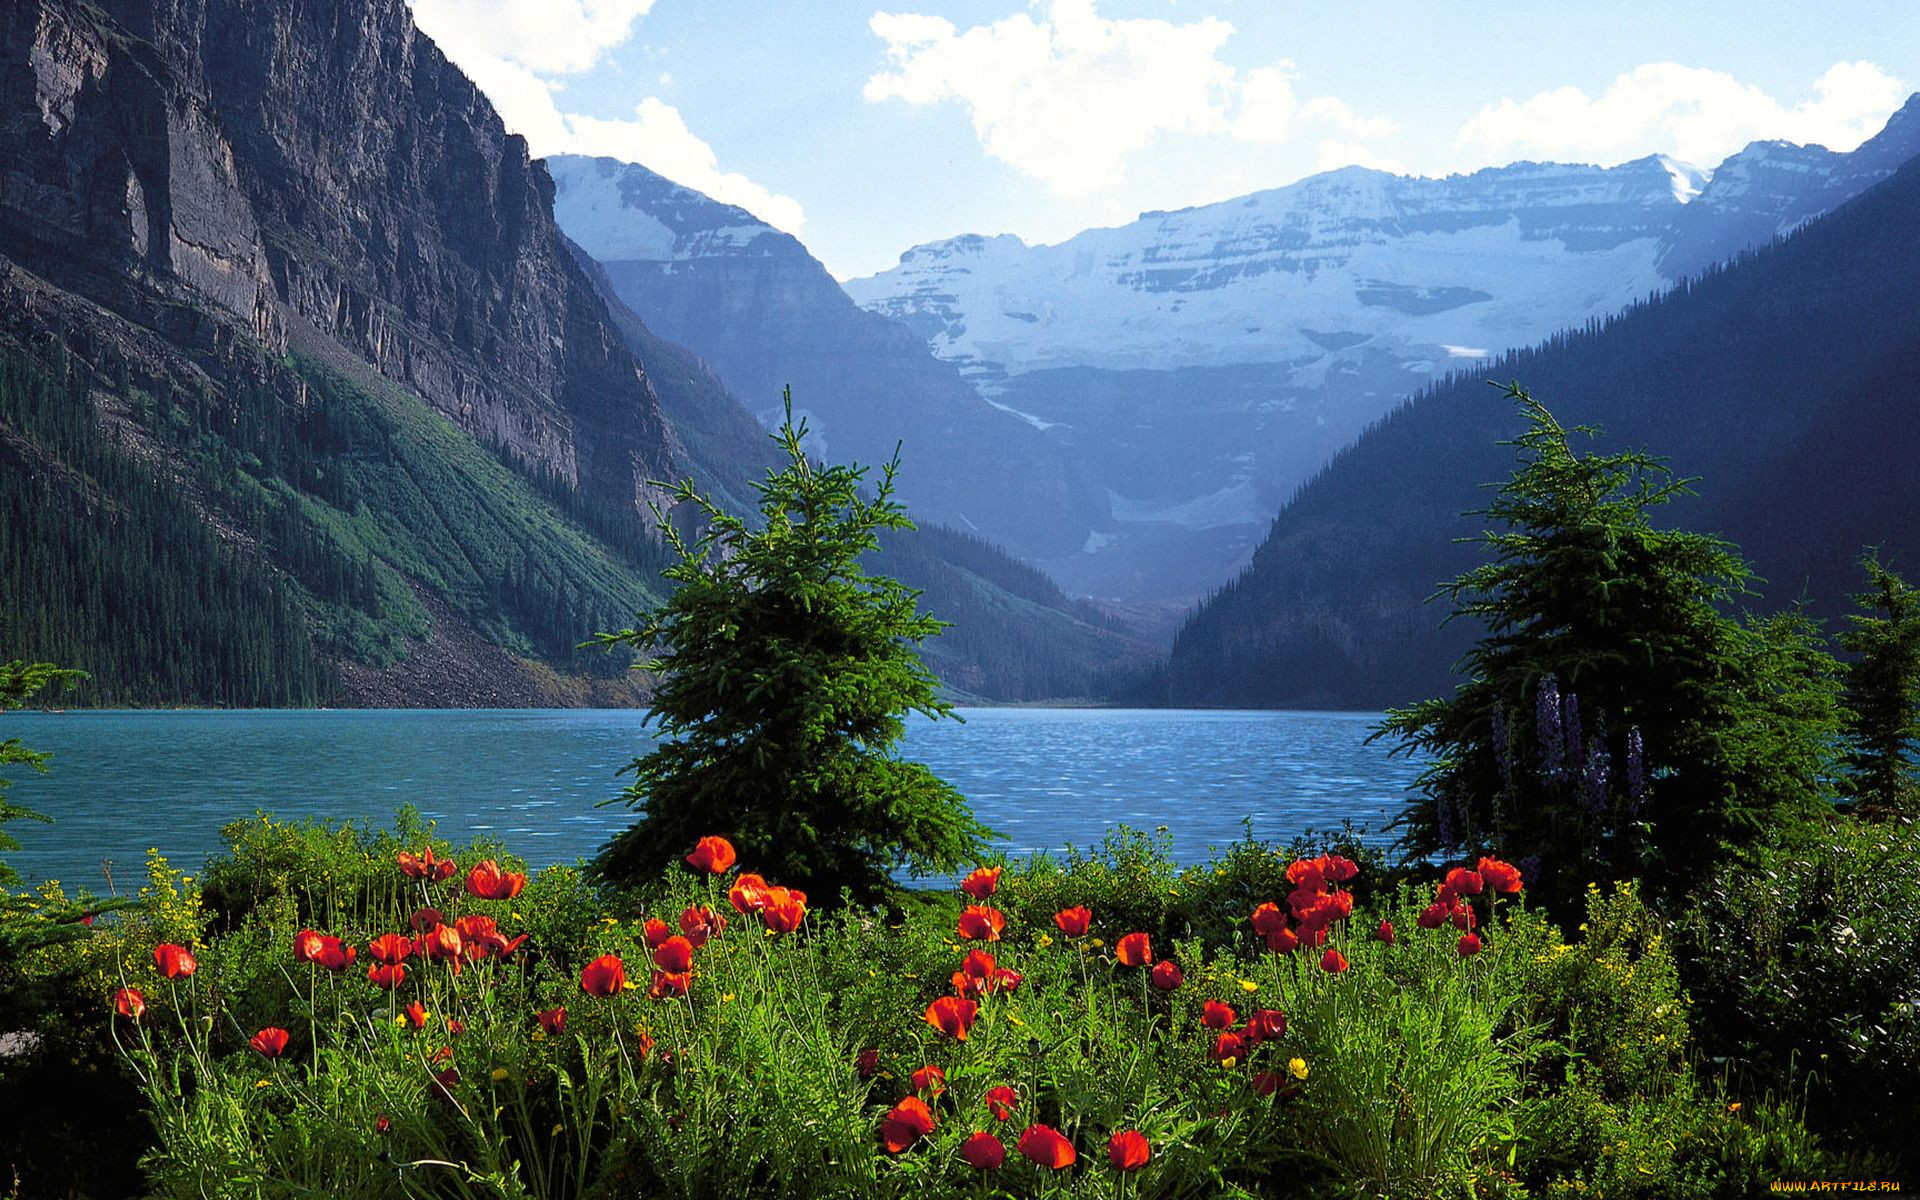 Найти картинку природу. Цветы Канады Банф. Мультинские озера. Швейцария манзаралари.